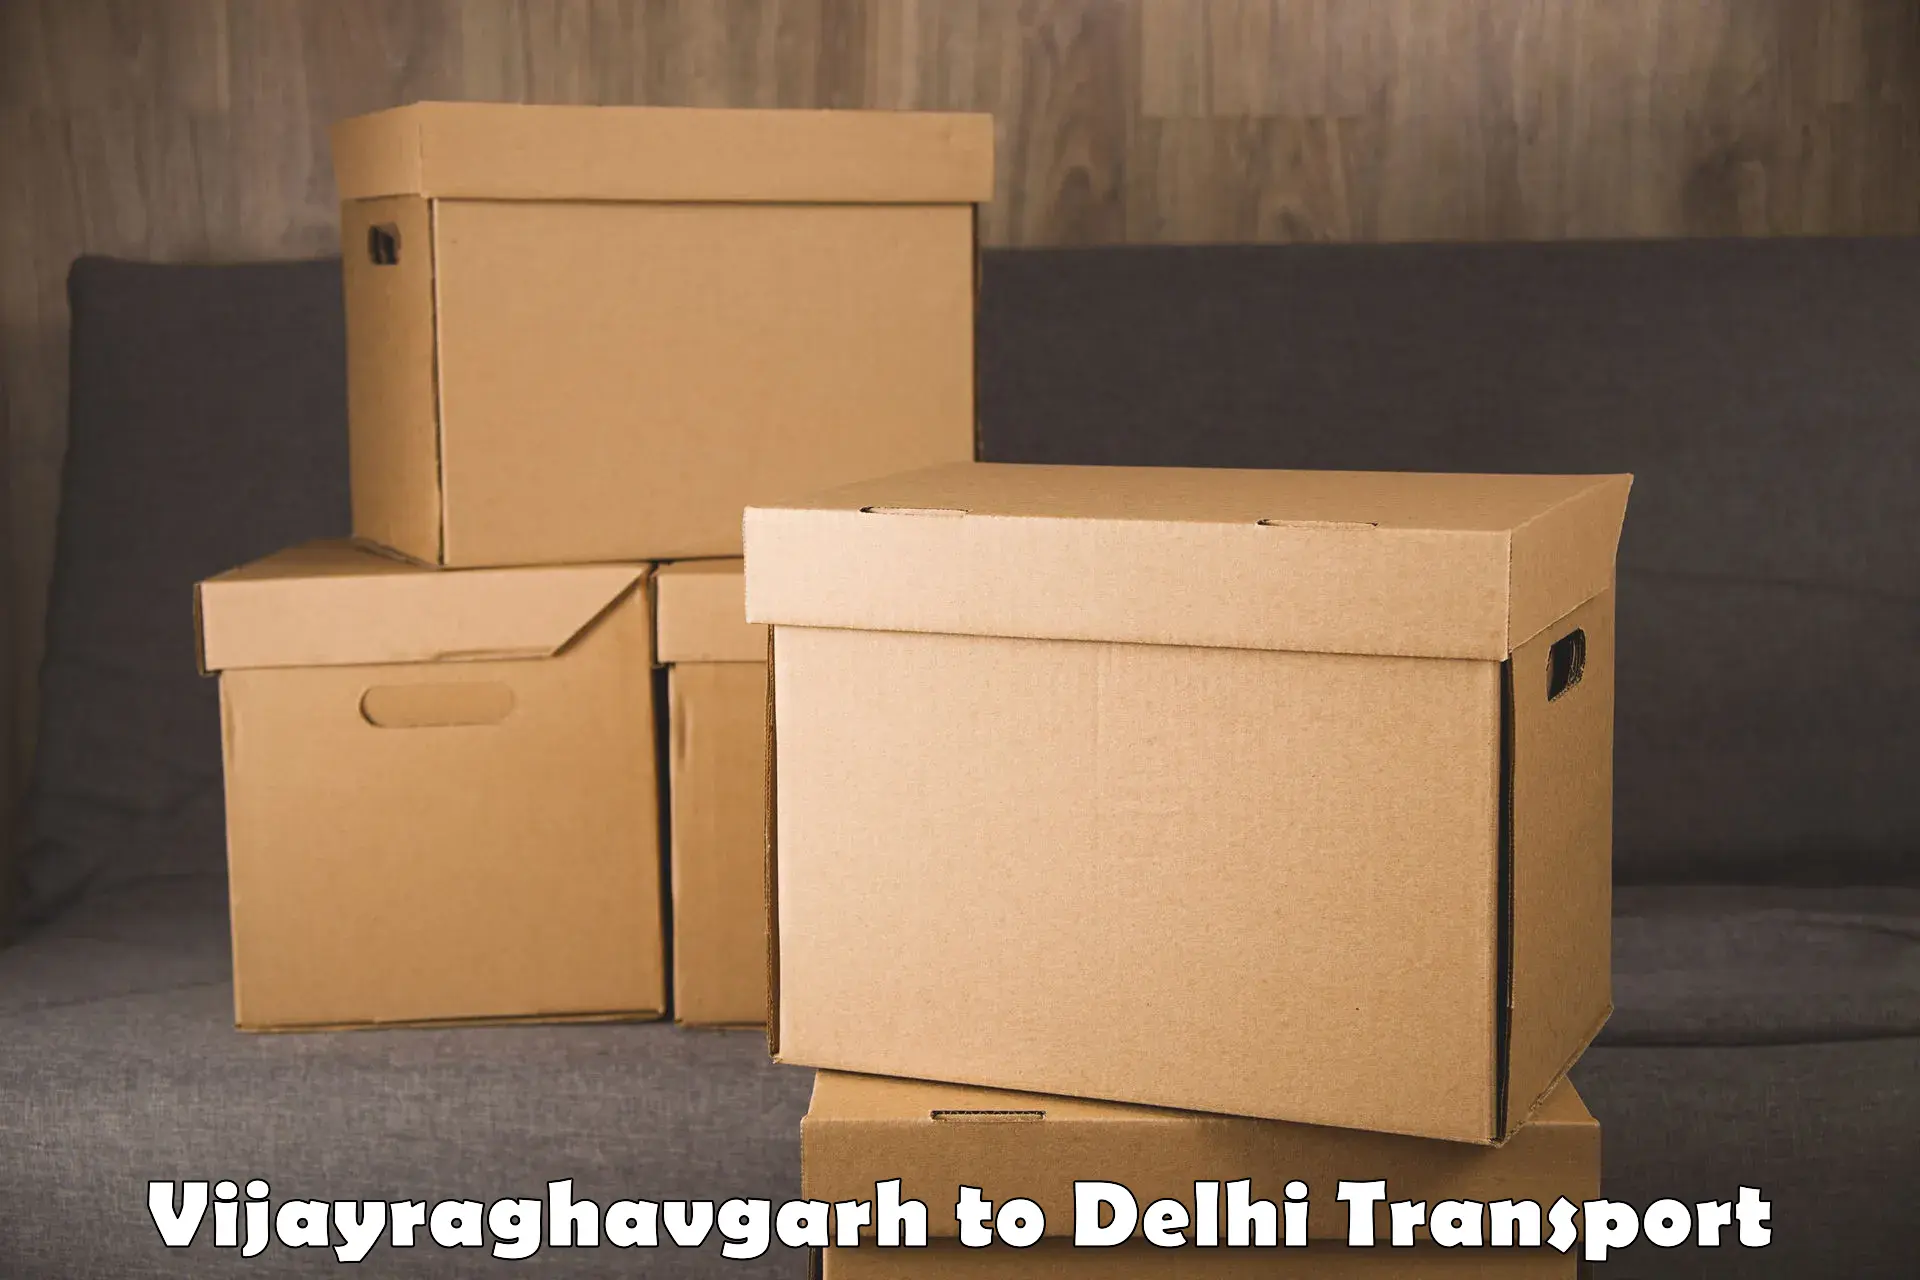 Commercial transport service Vijayraghavgarh to Delhi